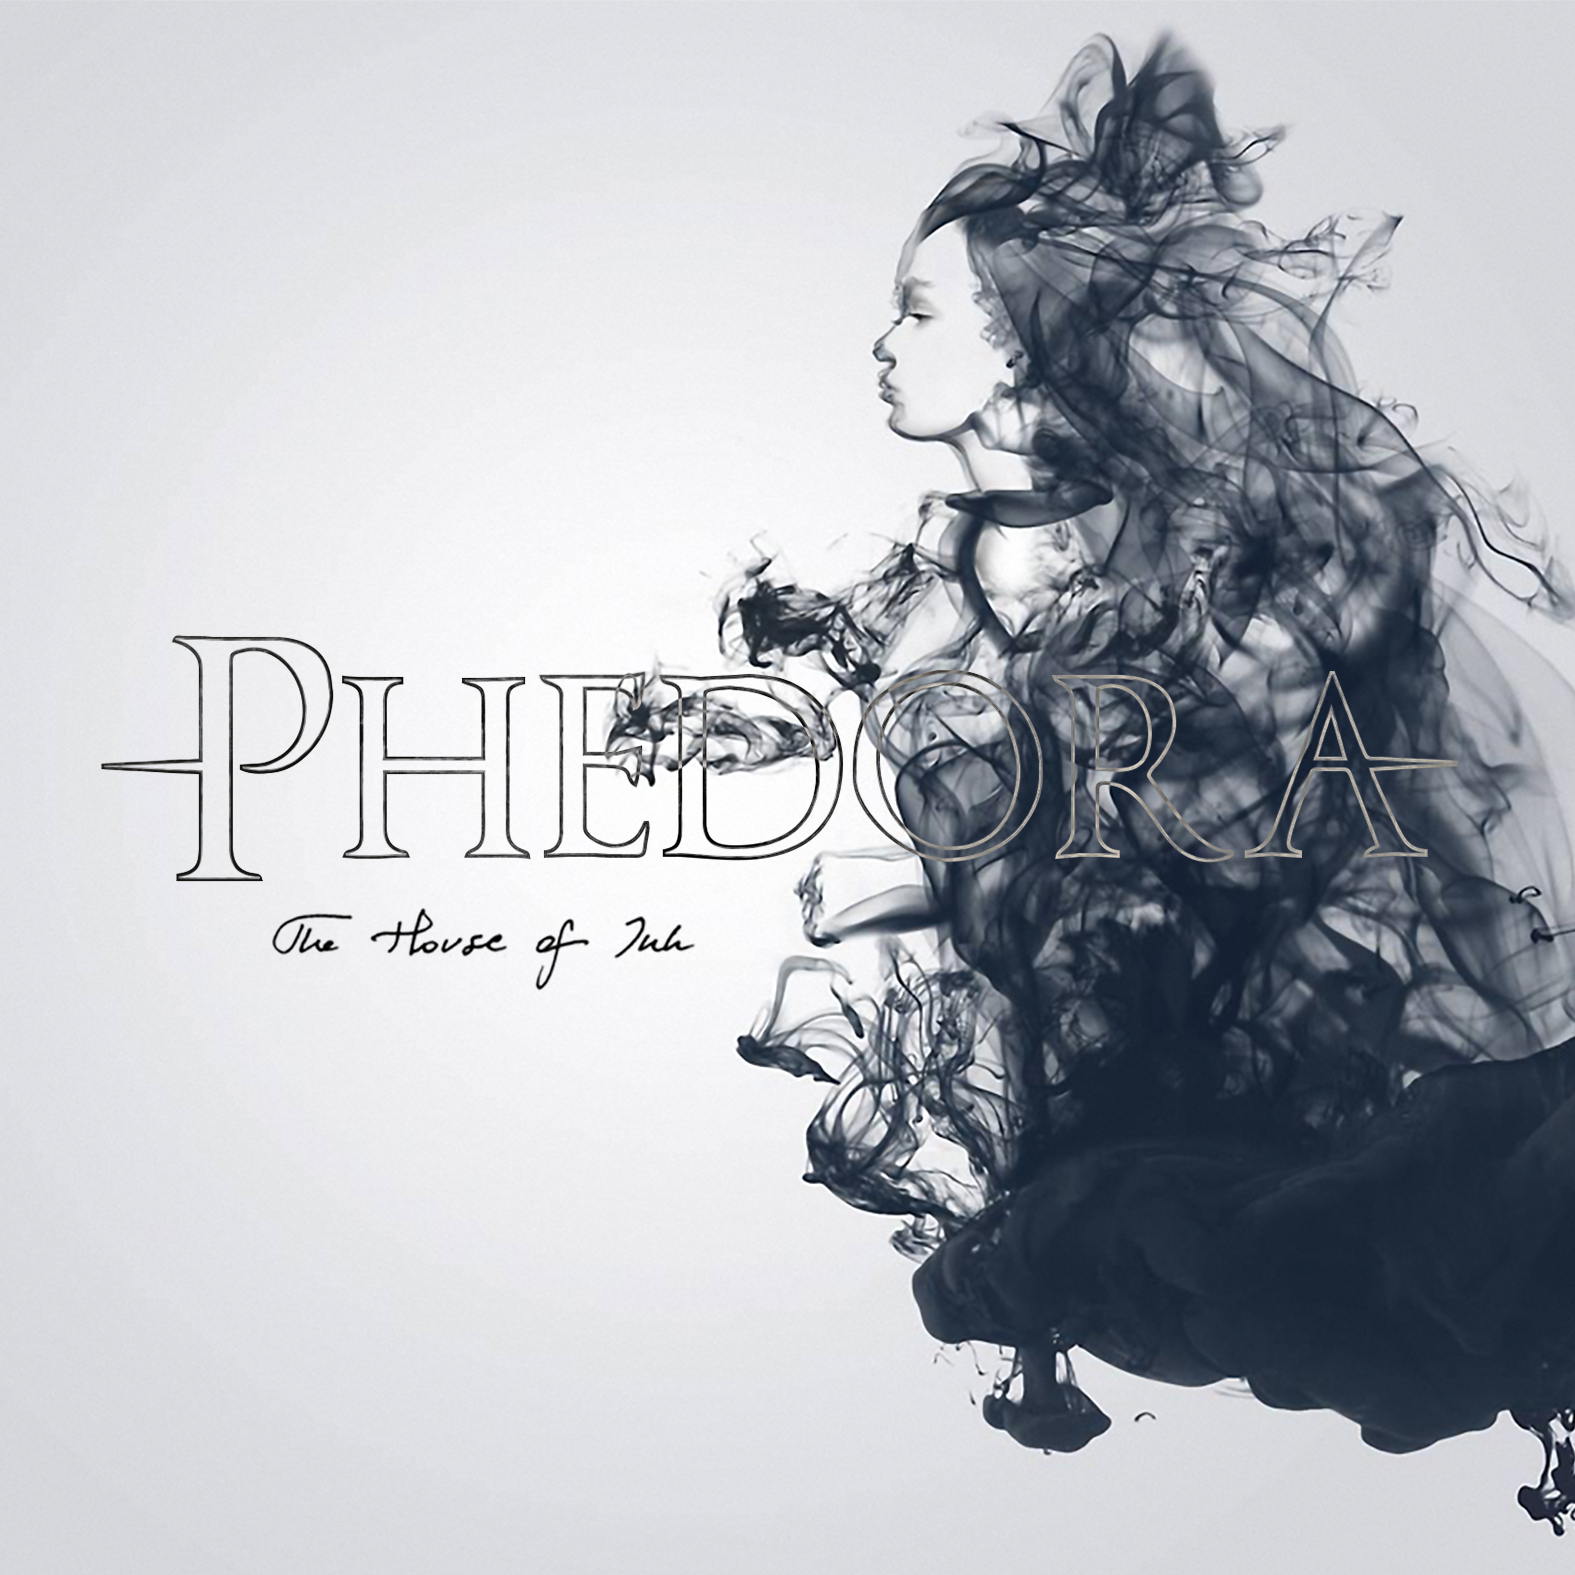 Phedora - The House of Ink (2015) Album Info